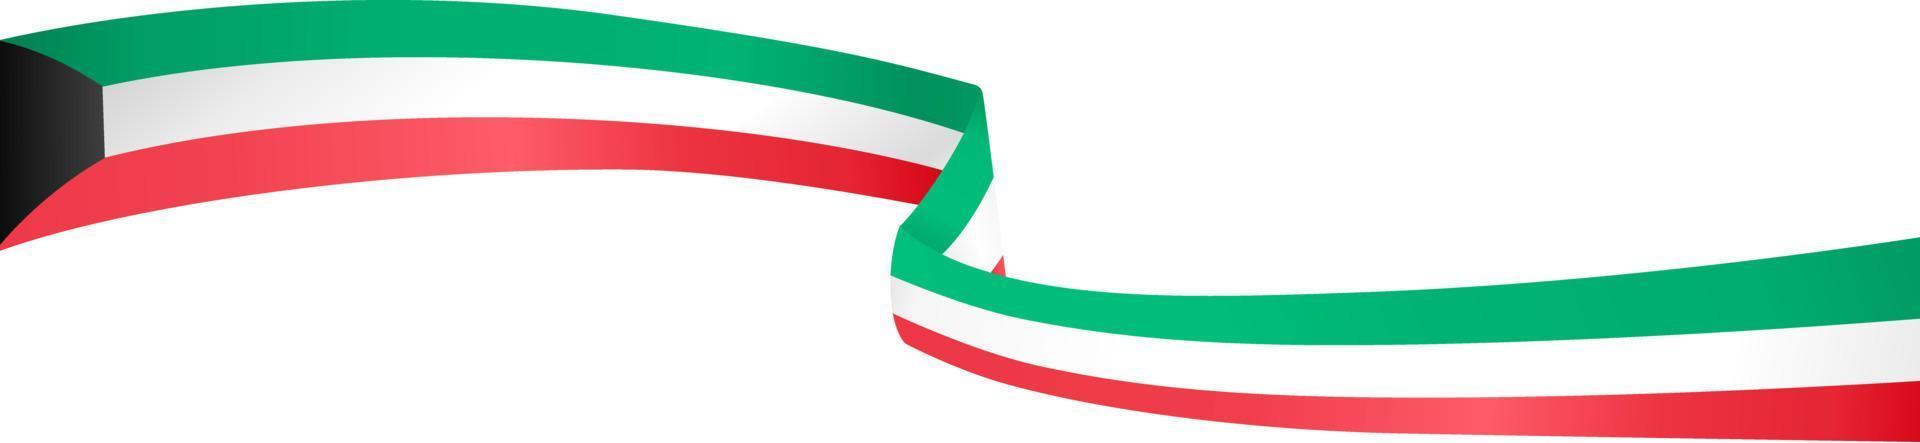 onda de bandeira do kuwait isolada em png ou fundo transparente, símbolo kuwait. ilustração vetorial vetor